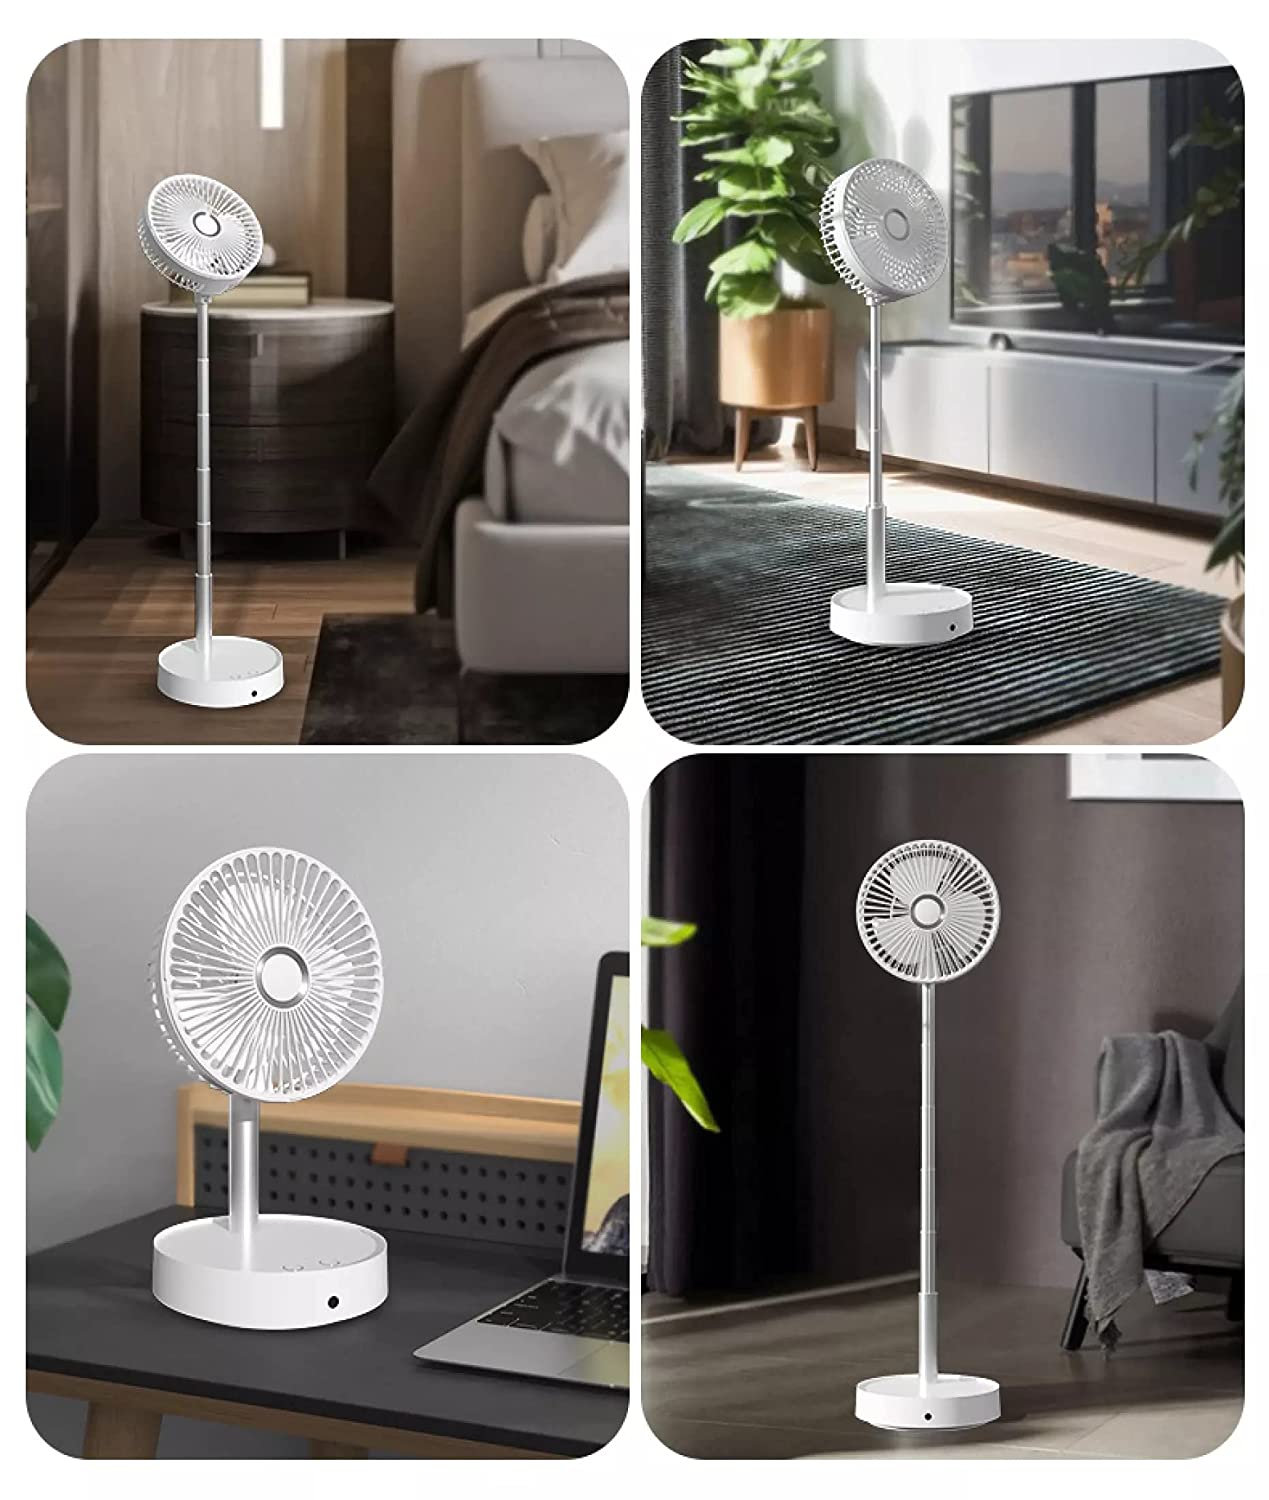 Table Rechargable Fan Cool Small Fan High Speed Desk Table Fan - Swify™️ Powerful Rechargeable High Speed Table Desk Fan Poshure®